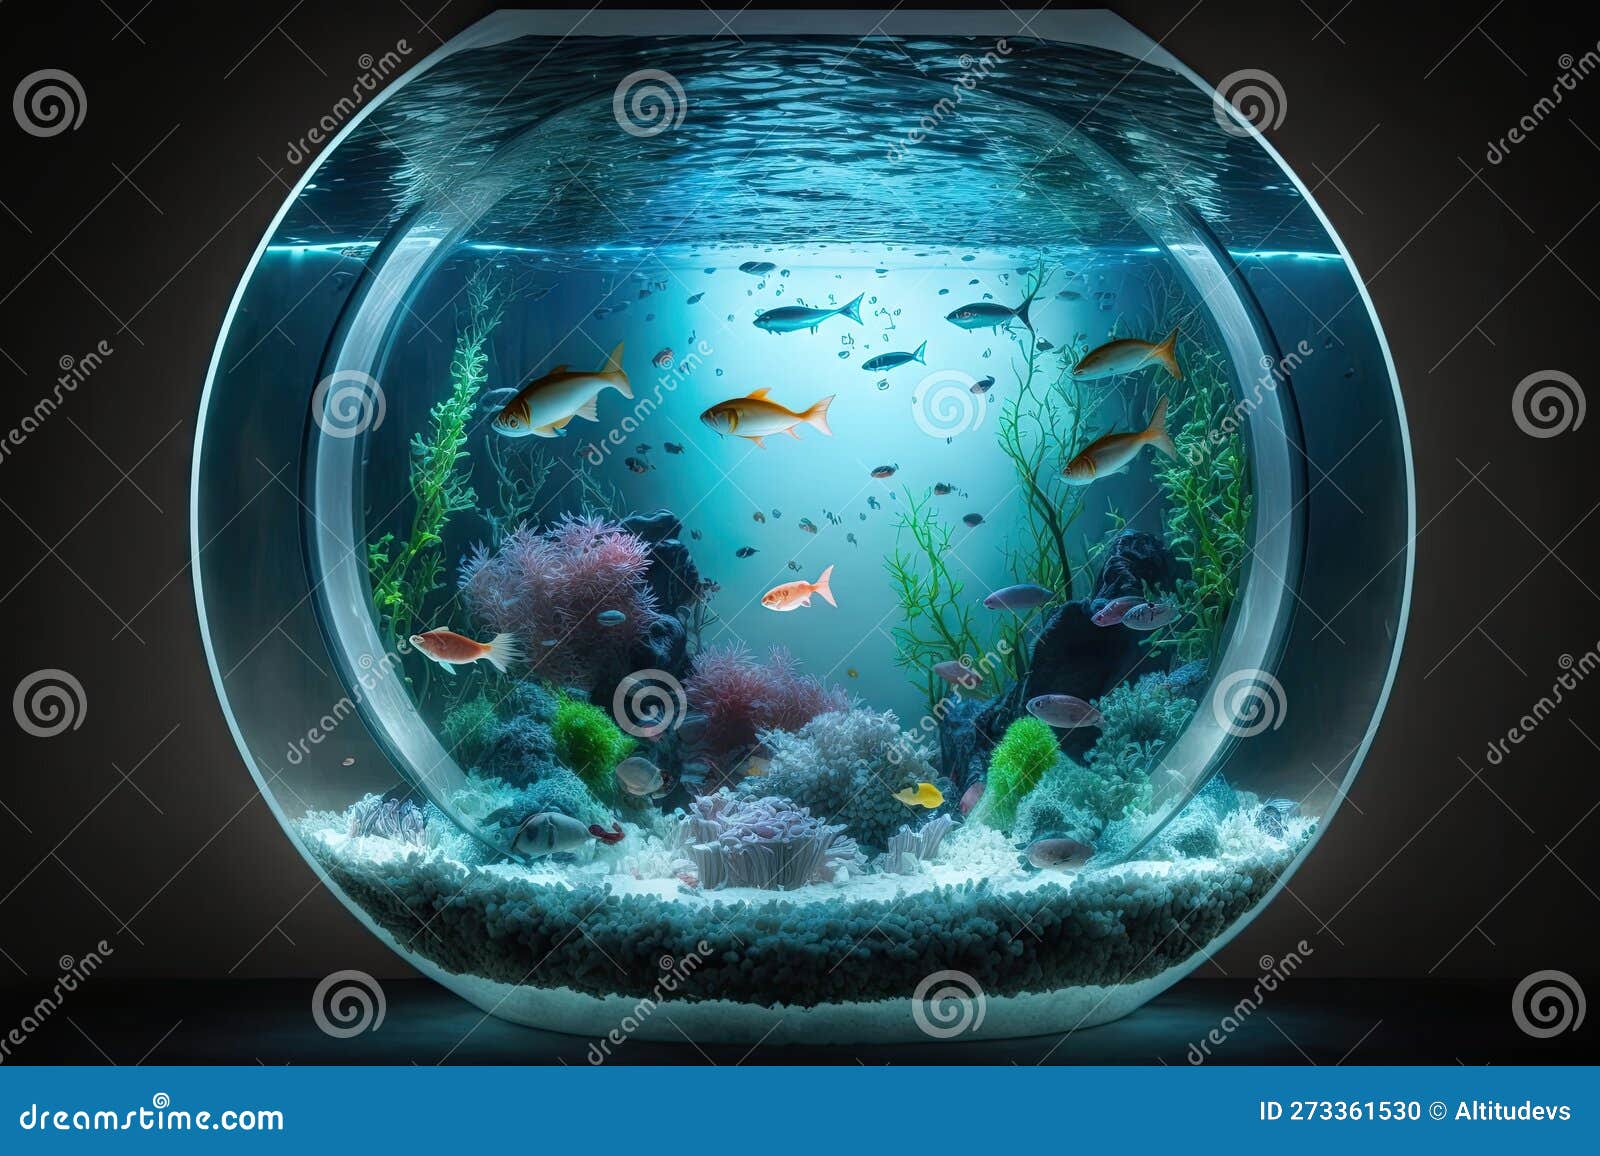 Large Round Aquarium with Empty Space and Illuminated Bottom Stock  Illustration - Illustration of fantasy, imagination: 273361530